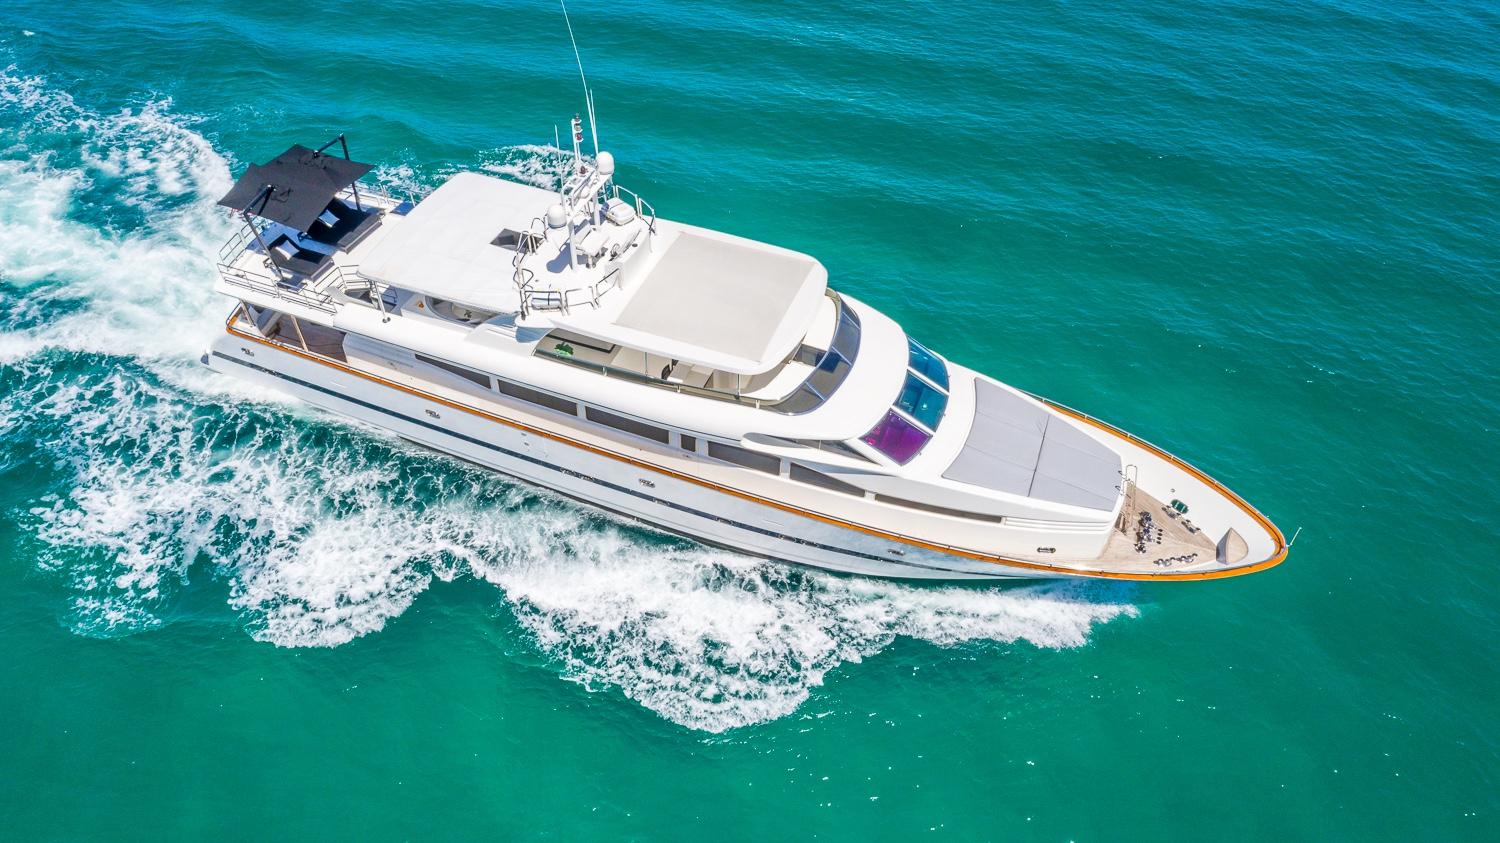 nirvana 1 yacht for sale